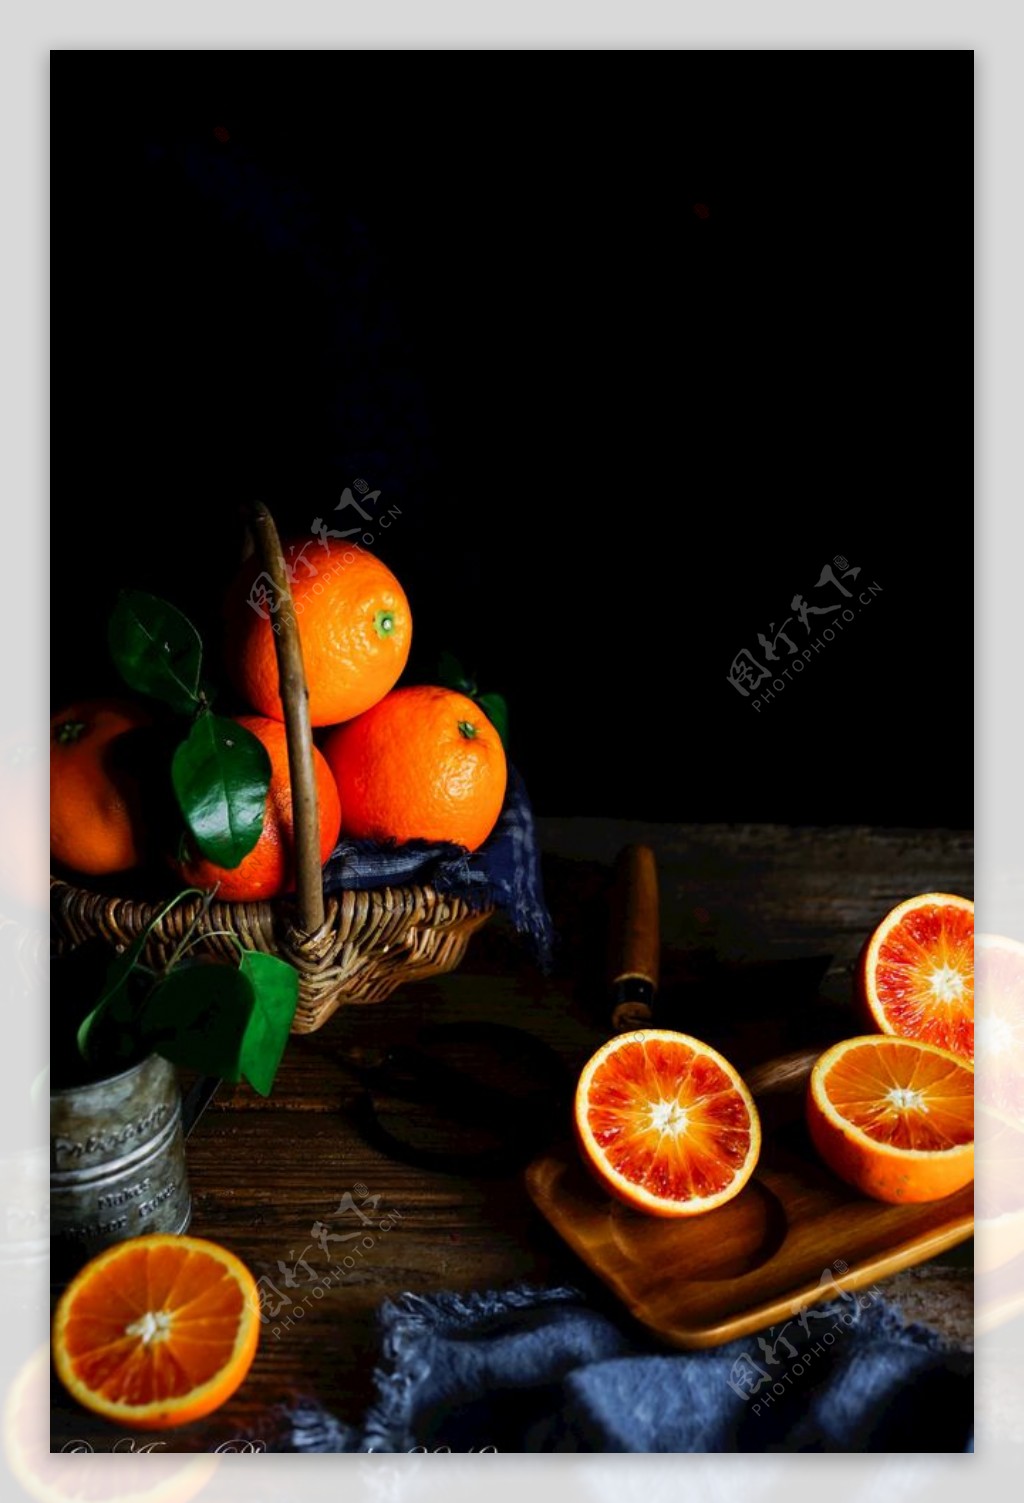 血橙橙子切开的橘子